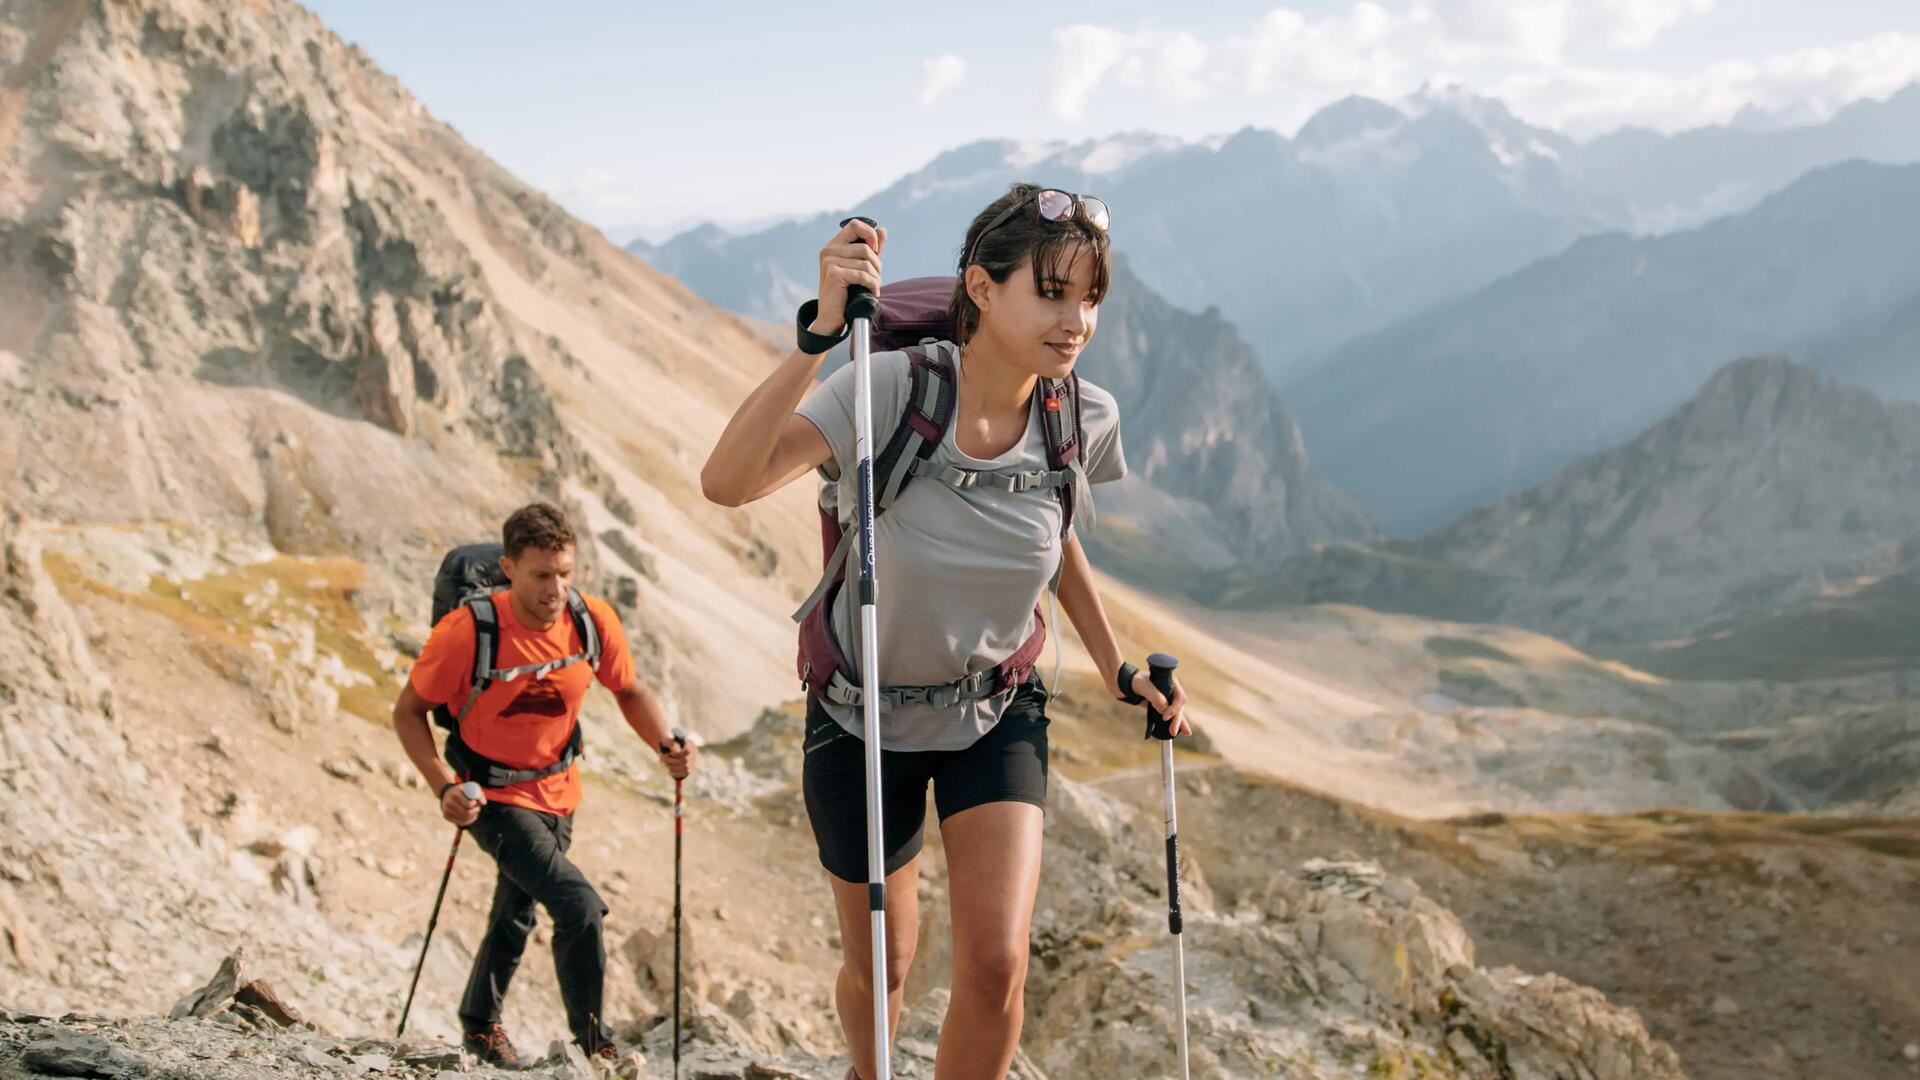 Mountain hiking shorts - MH500 - Women